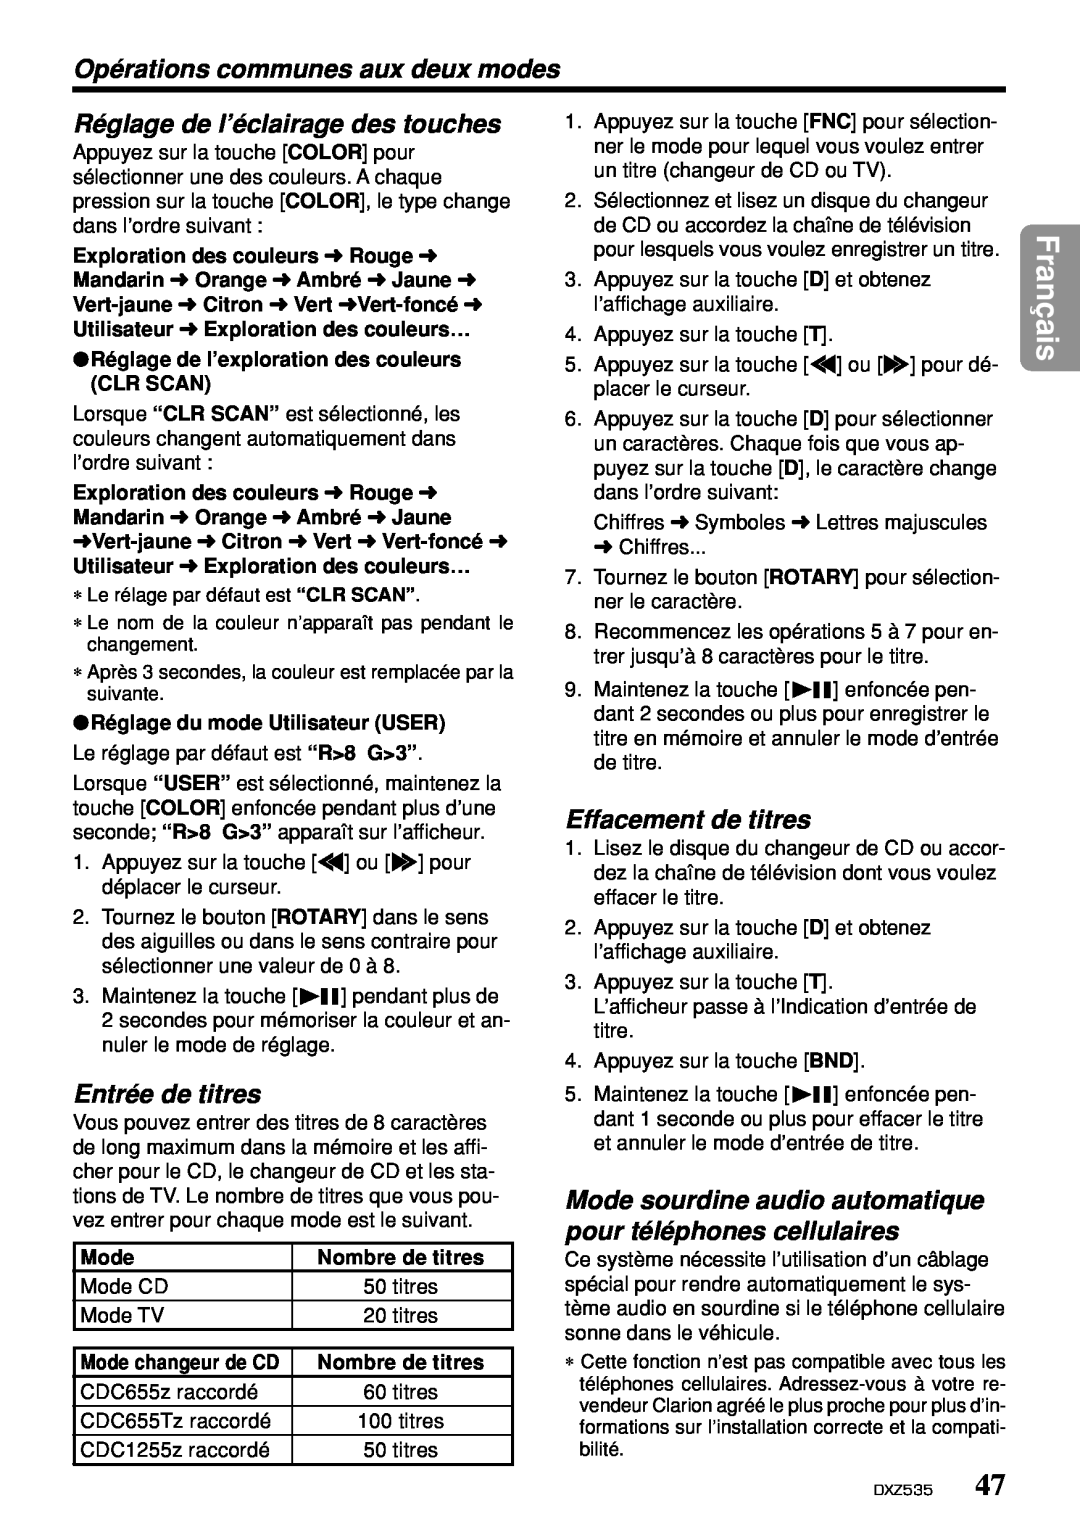 Clarion DXZ535 owner manual Réglage de l’éclairage des touches, Effacement de titres, Entrée de titres, Français 